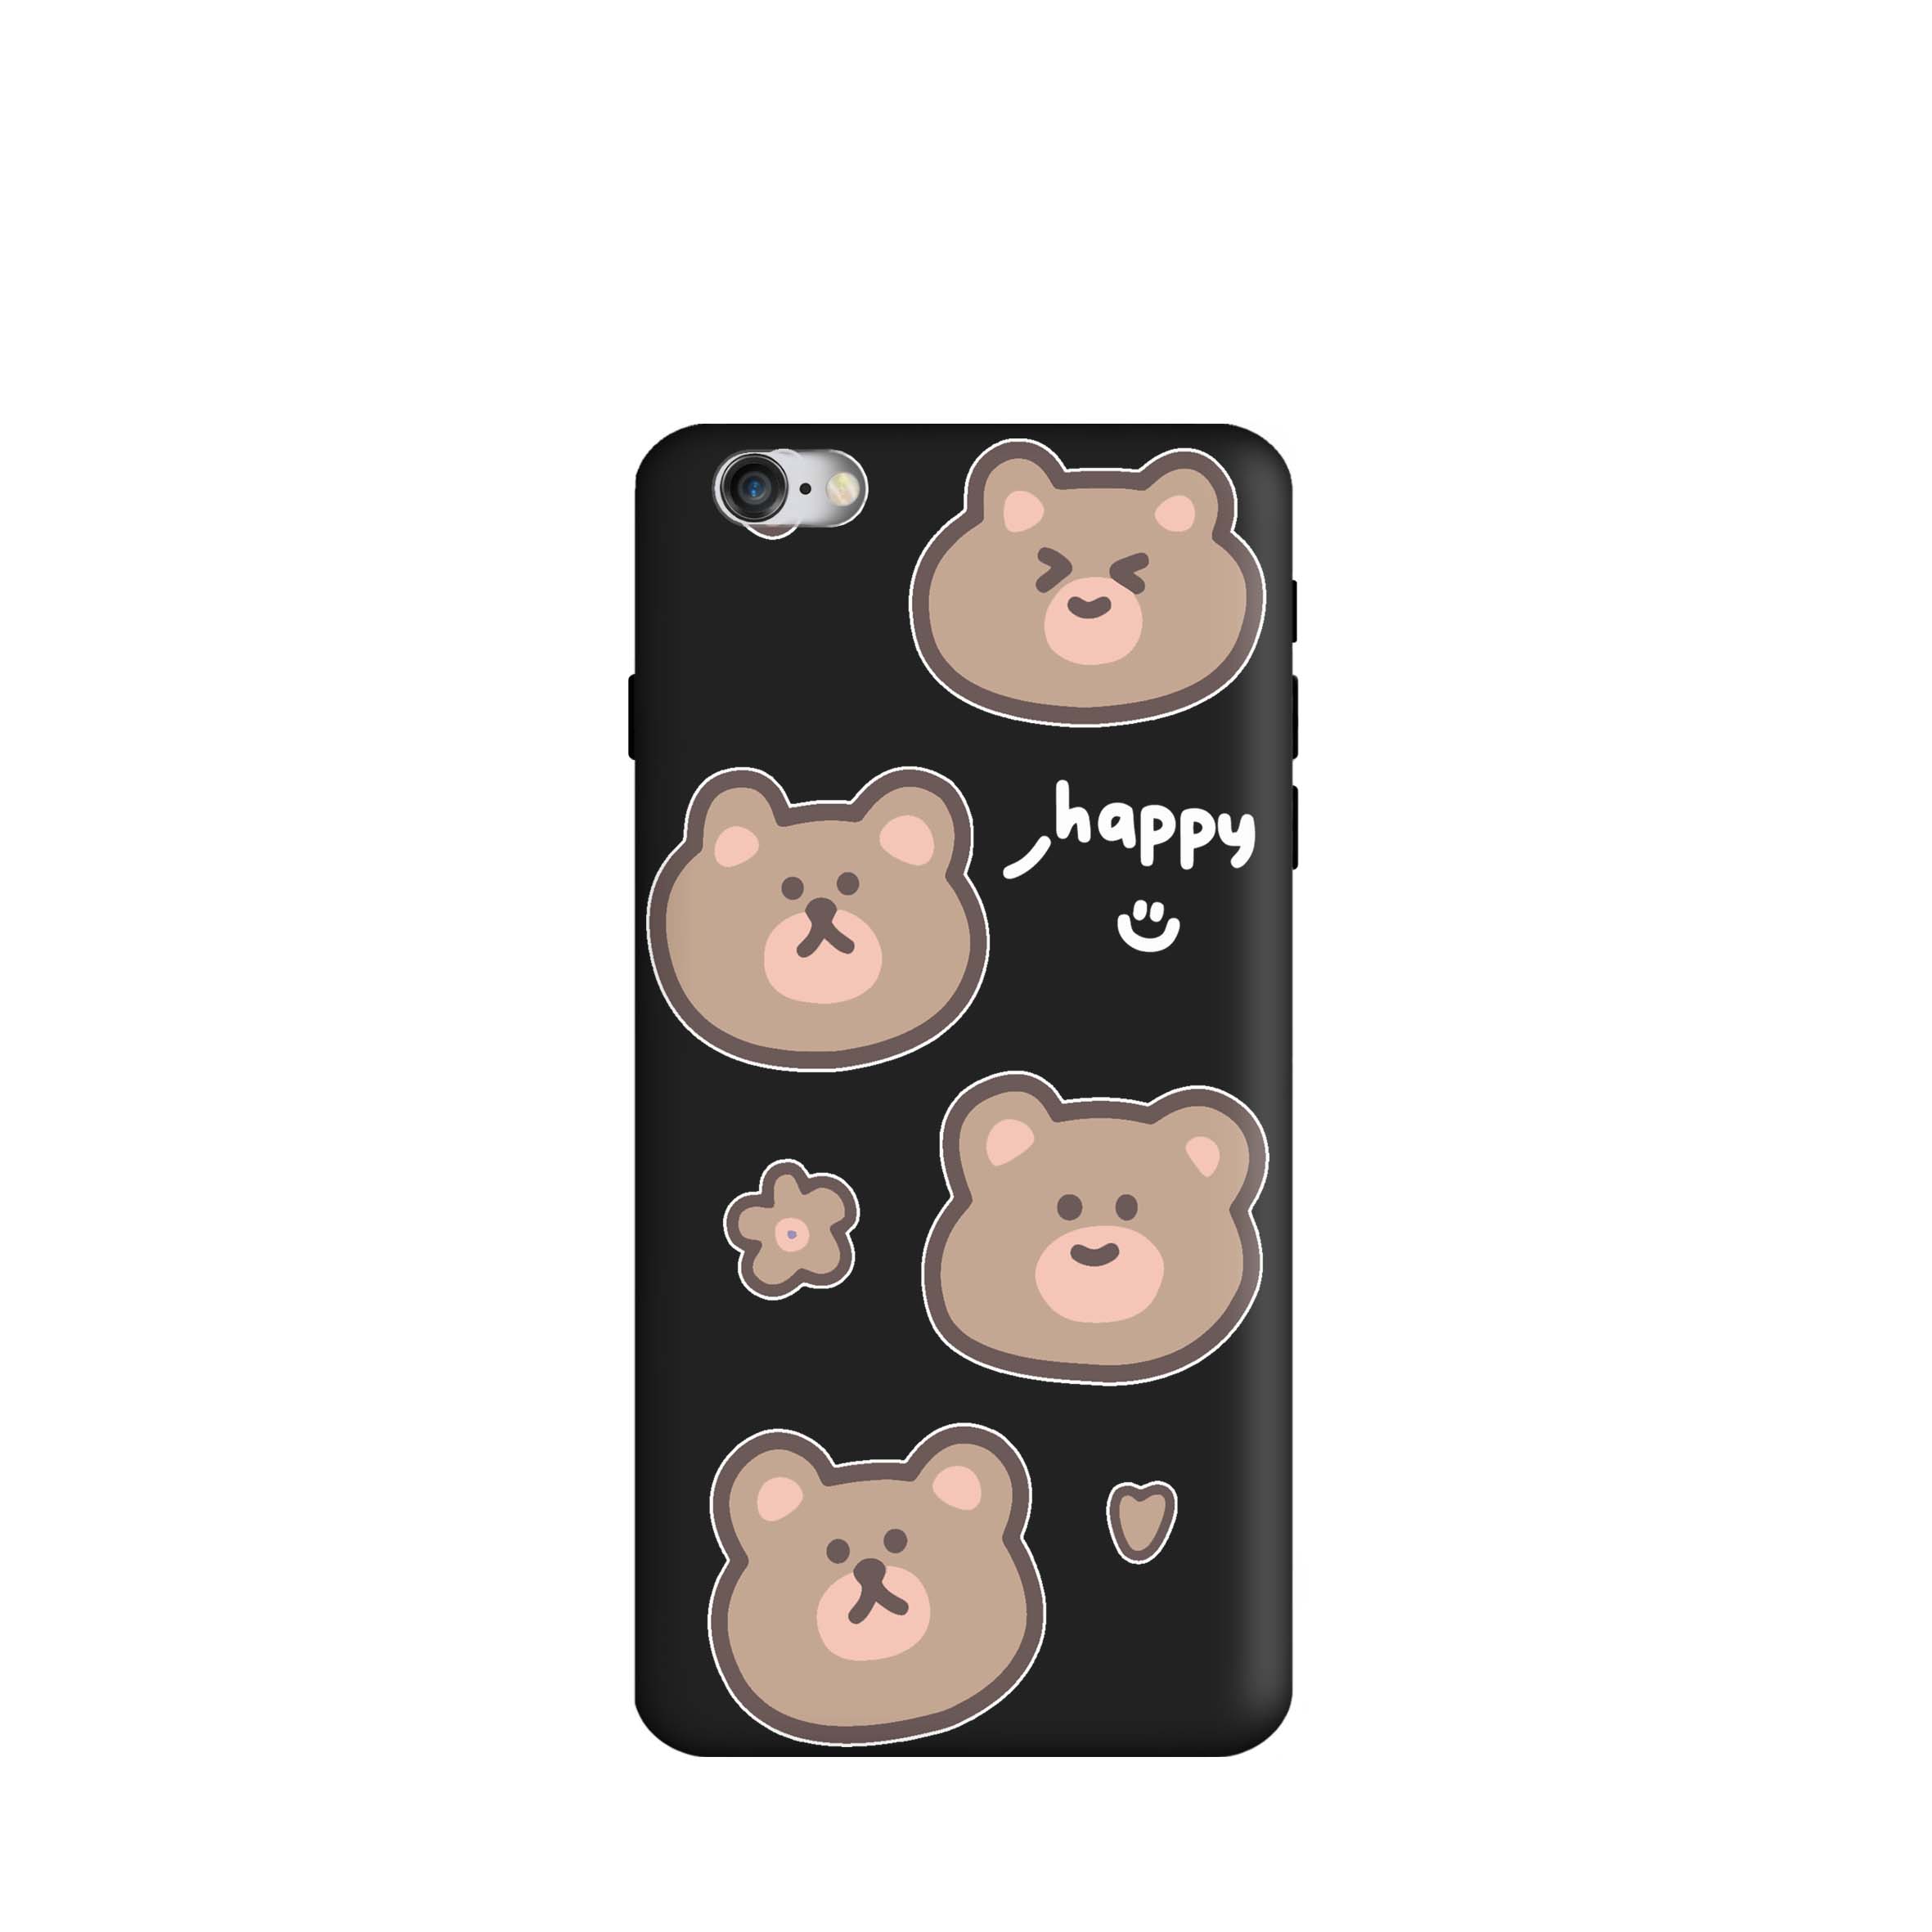 کاور طرح خرس های کیوت کد f3973 مناسب برای گوشی موبایل اپل iphone 6 / 6s